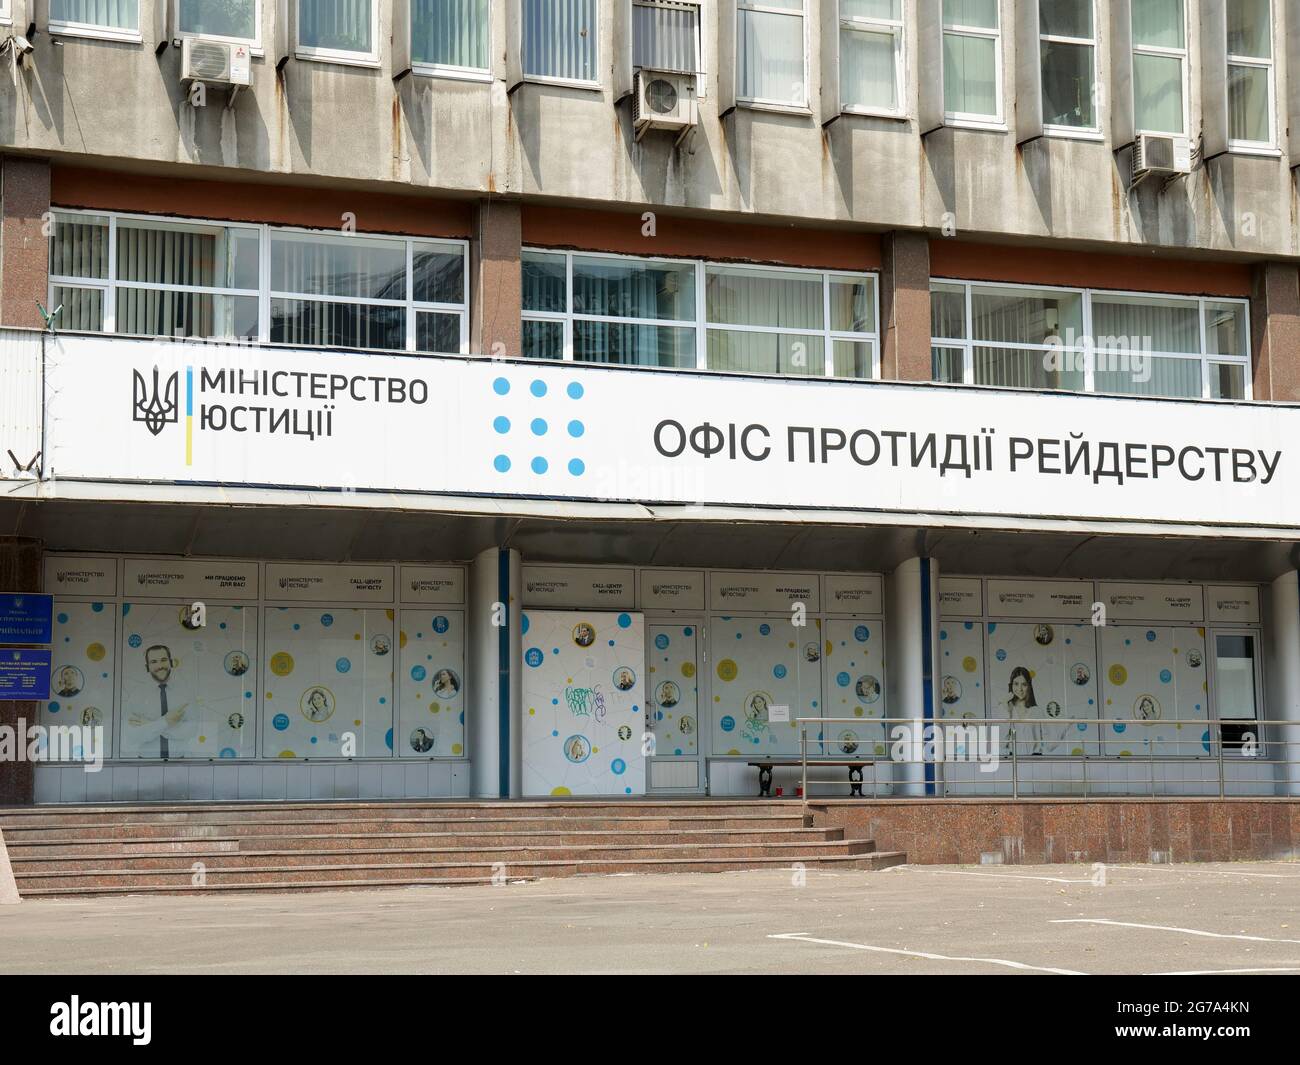 KIEV, UCRAINA - 04 luglio 2021. Facciata dell'edificio del Ministero della Giustizia dell'Ucraina. Ufficio contro i raiders. Foto Stock